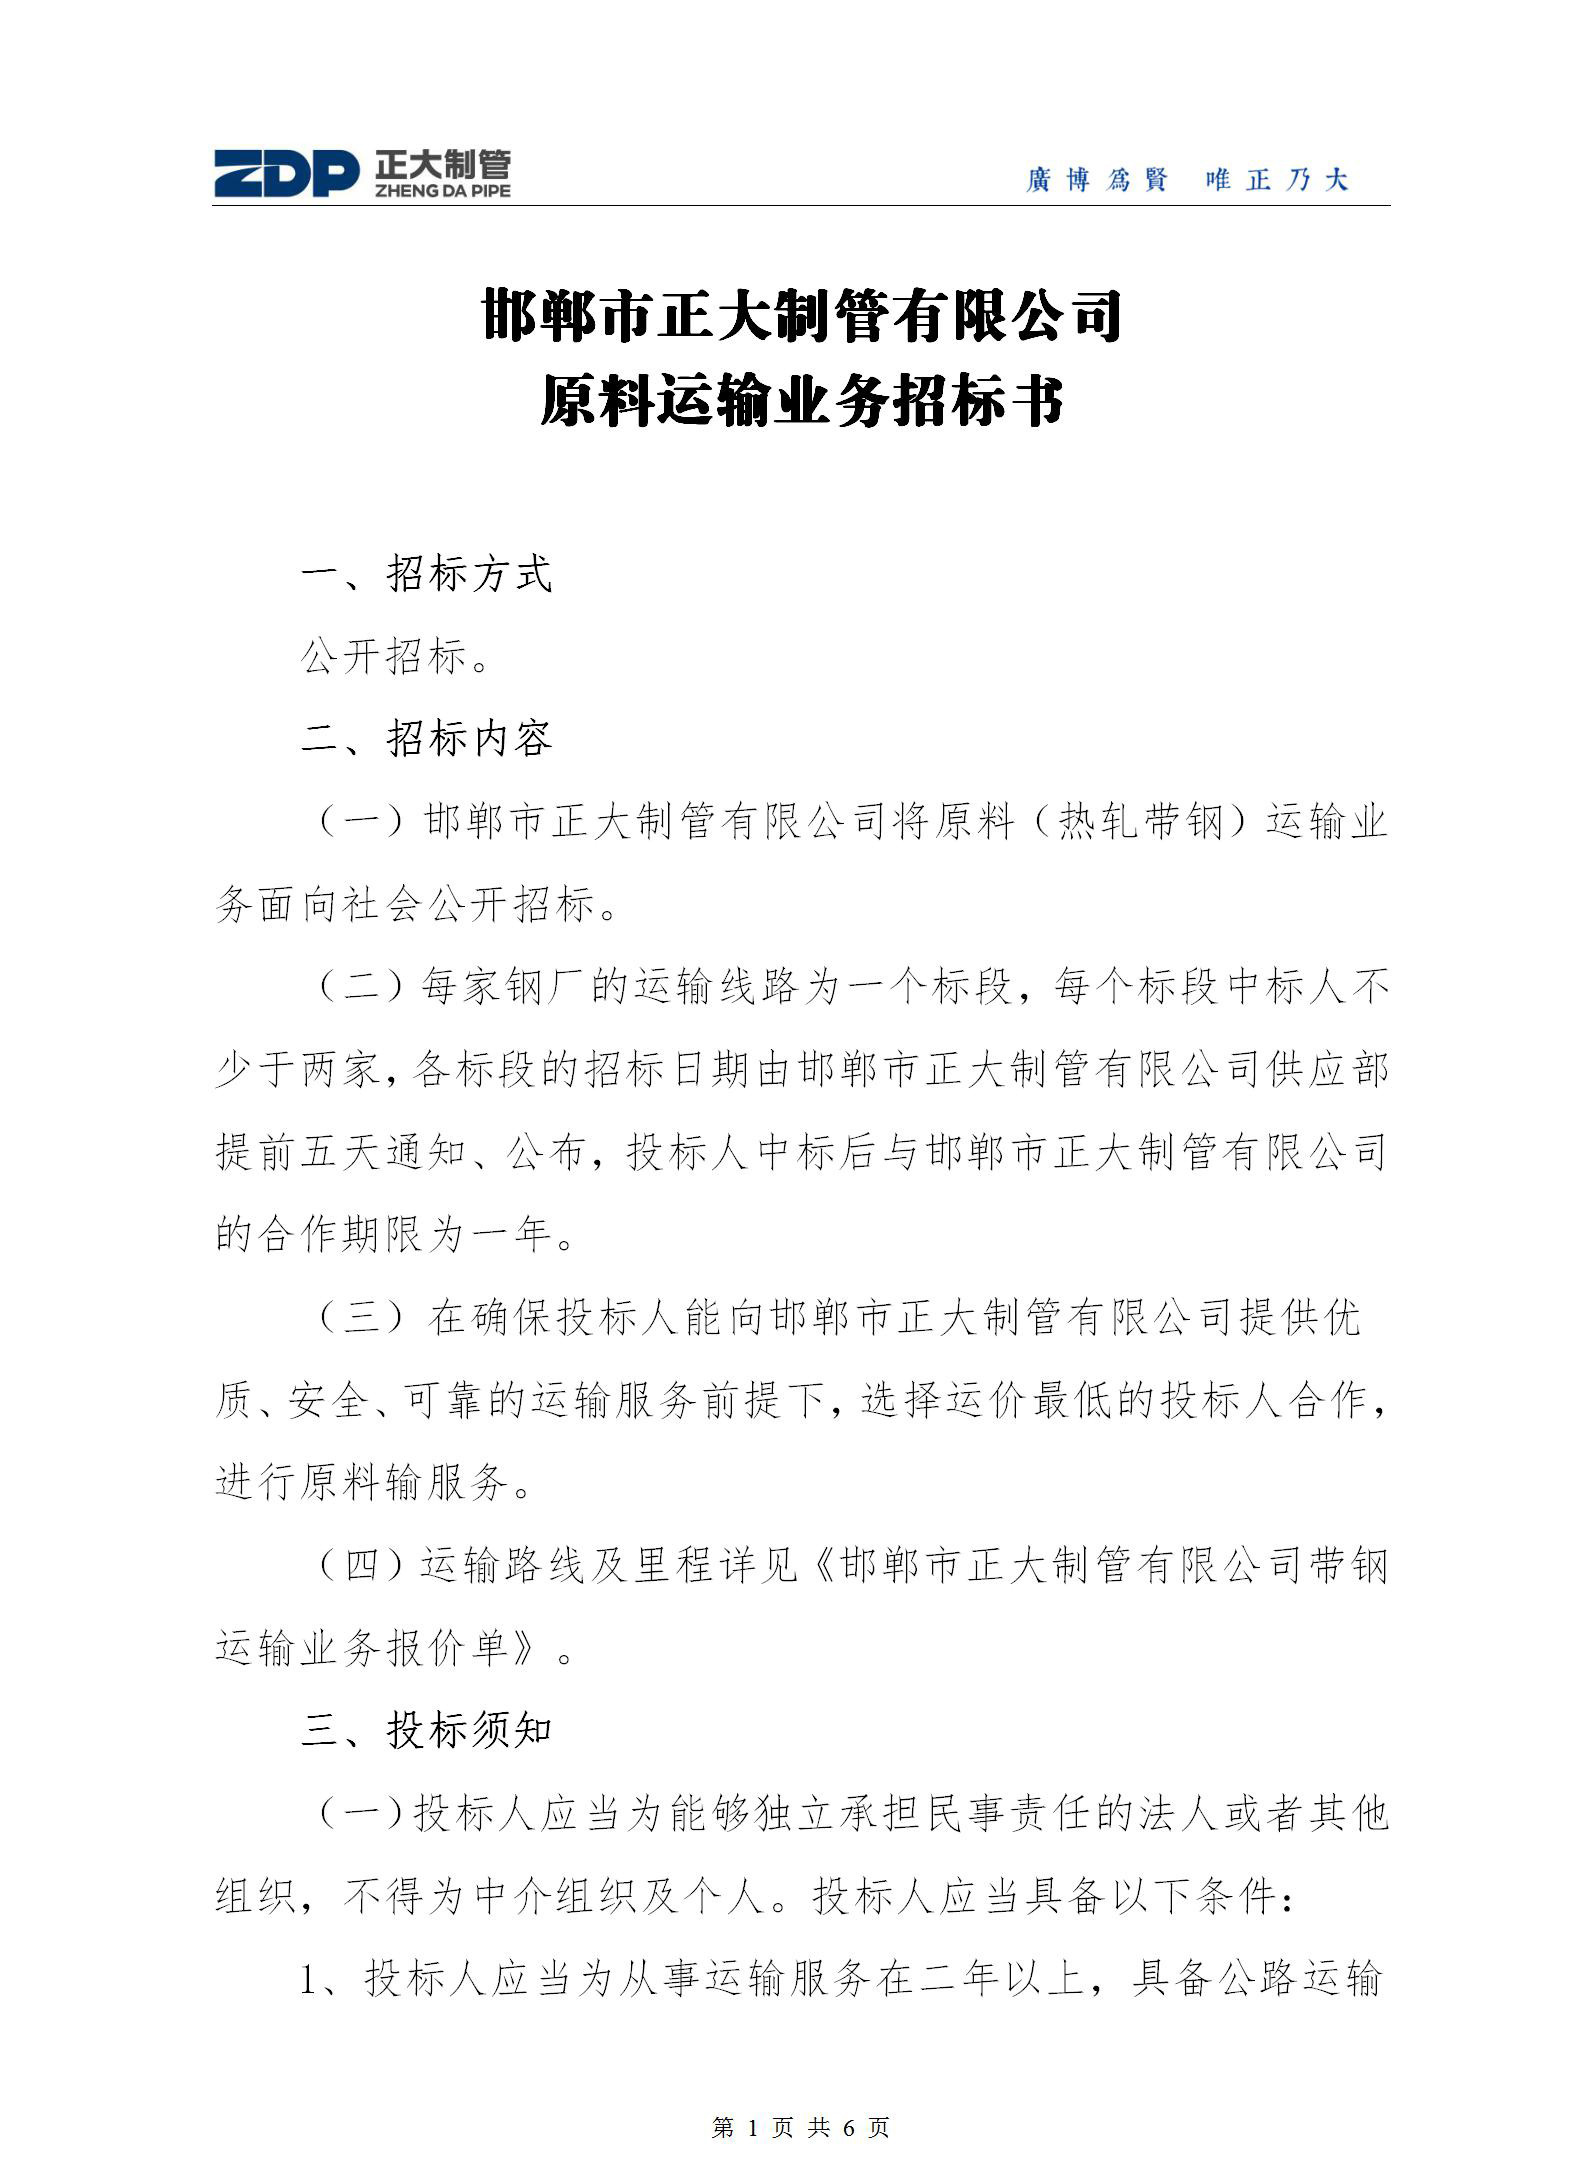 邯郸市万博平台app下载万博手机版的有限公司原料运输业务招标书